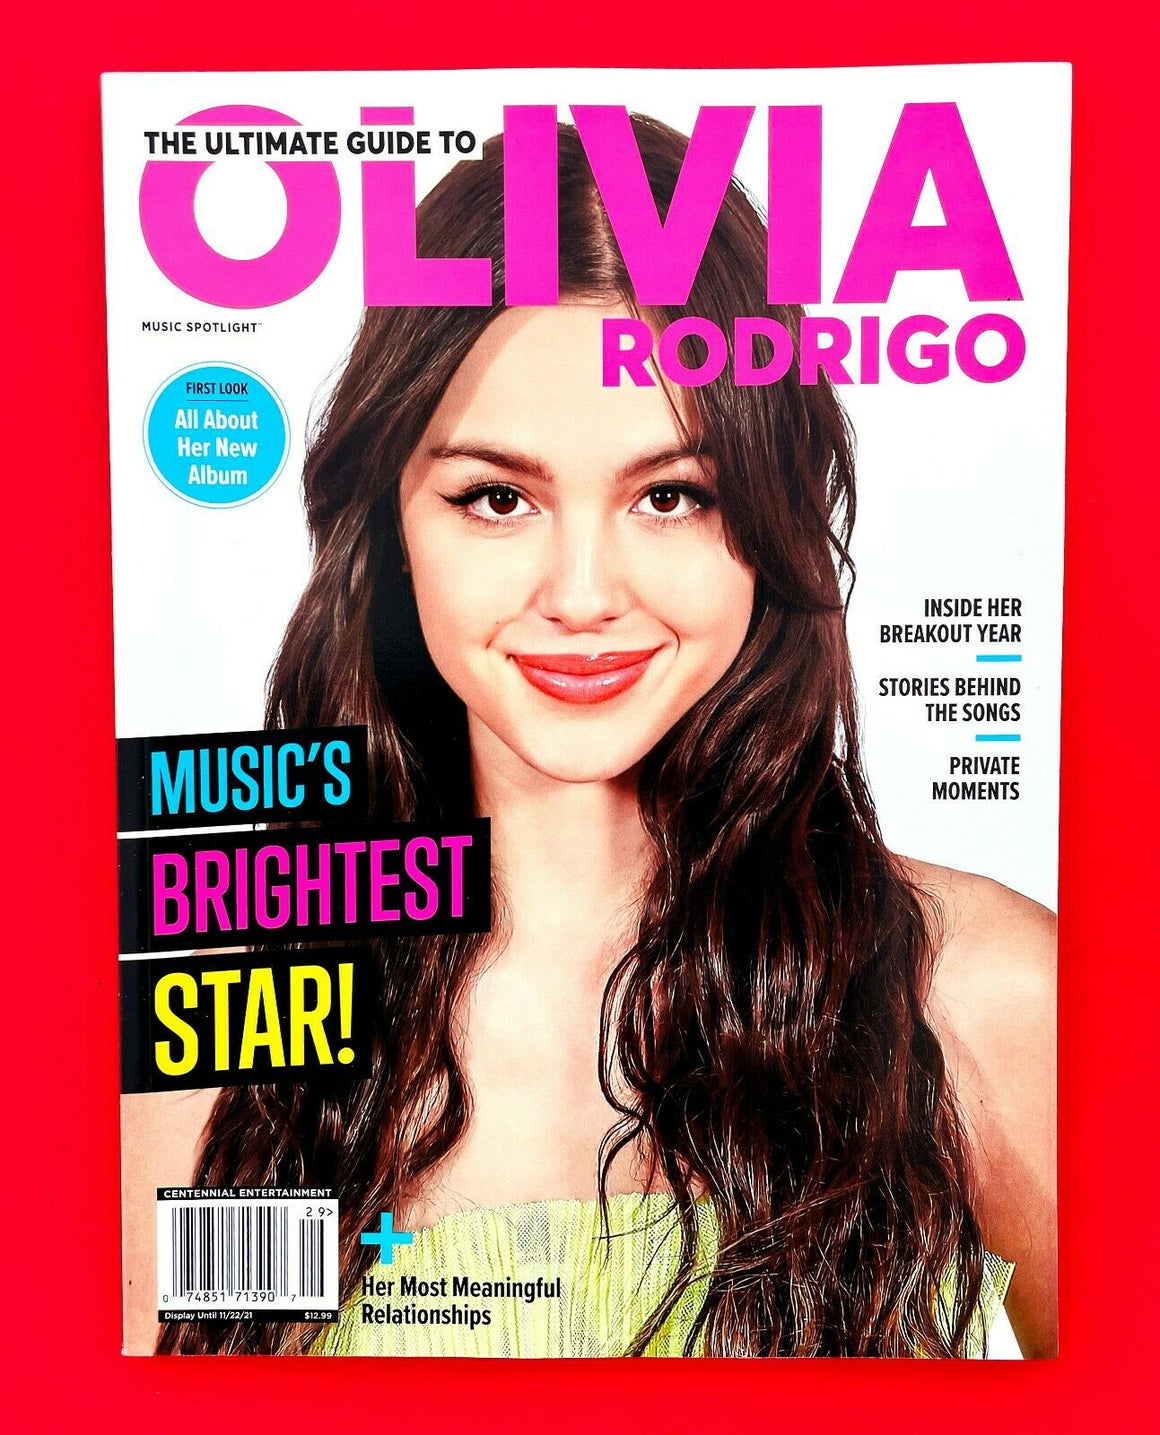 THE ULTIMATE GUIDE TO OLIVIA RODRIGO 2021 CENTENNIAL Magazine Special / NEW